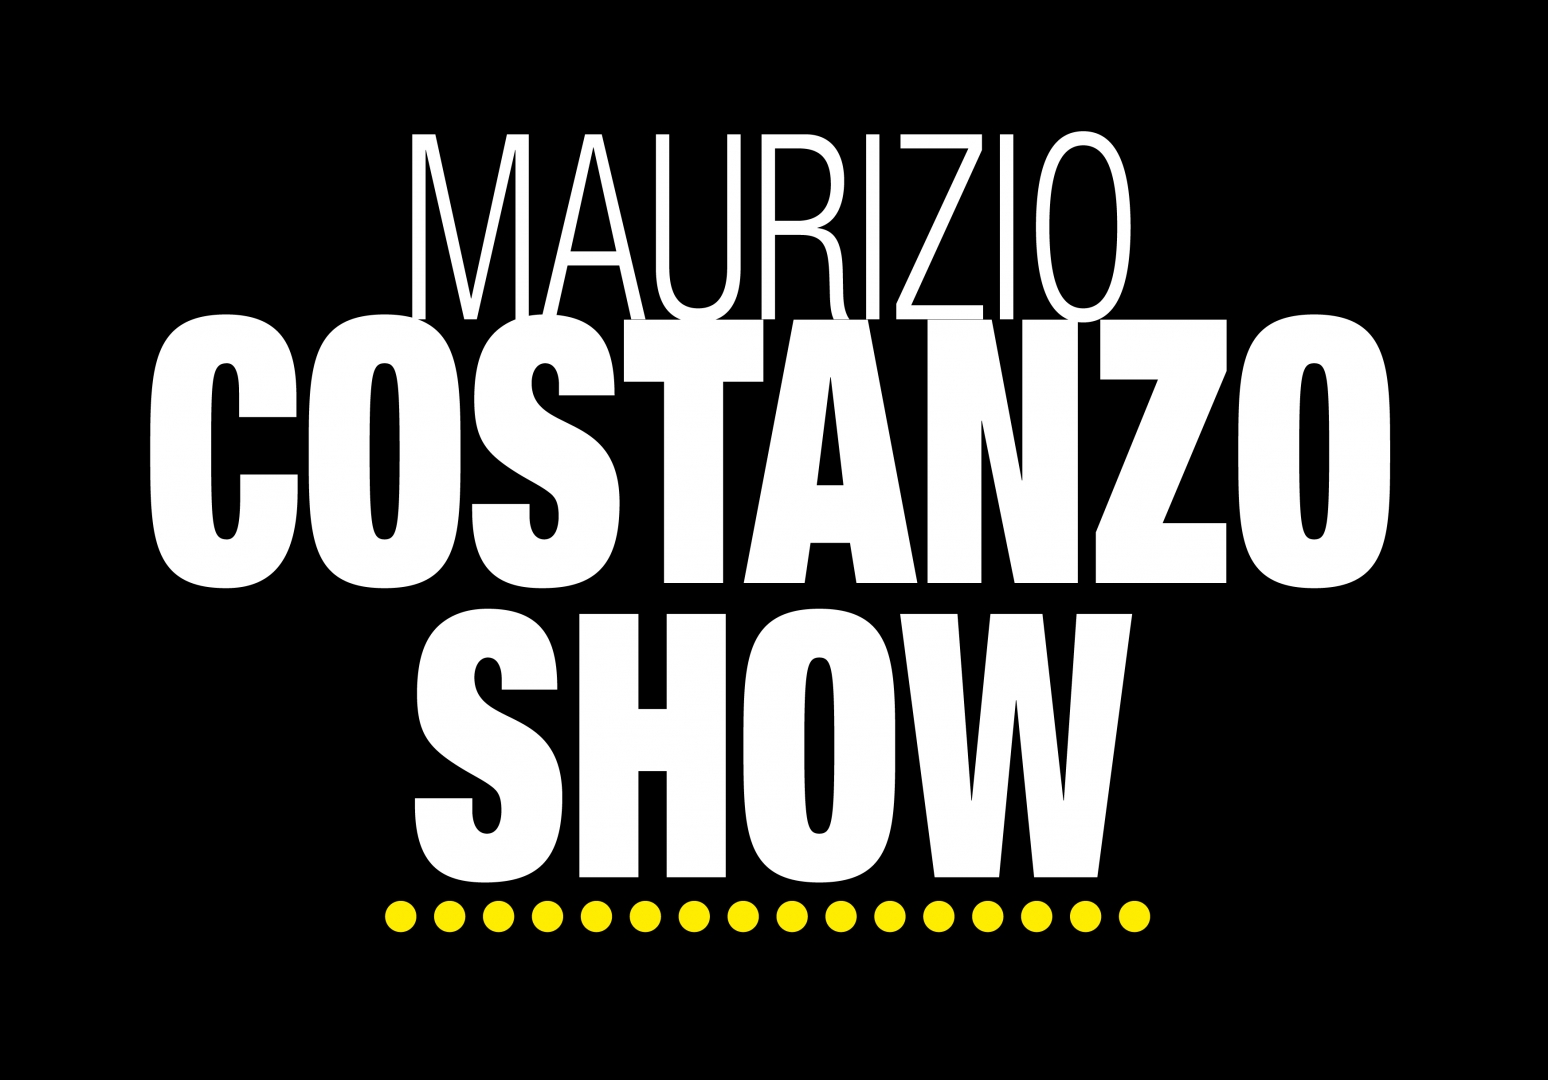 Maurizio Costanzo Show 29 settembre 2022